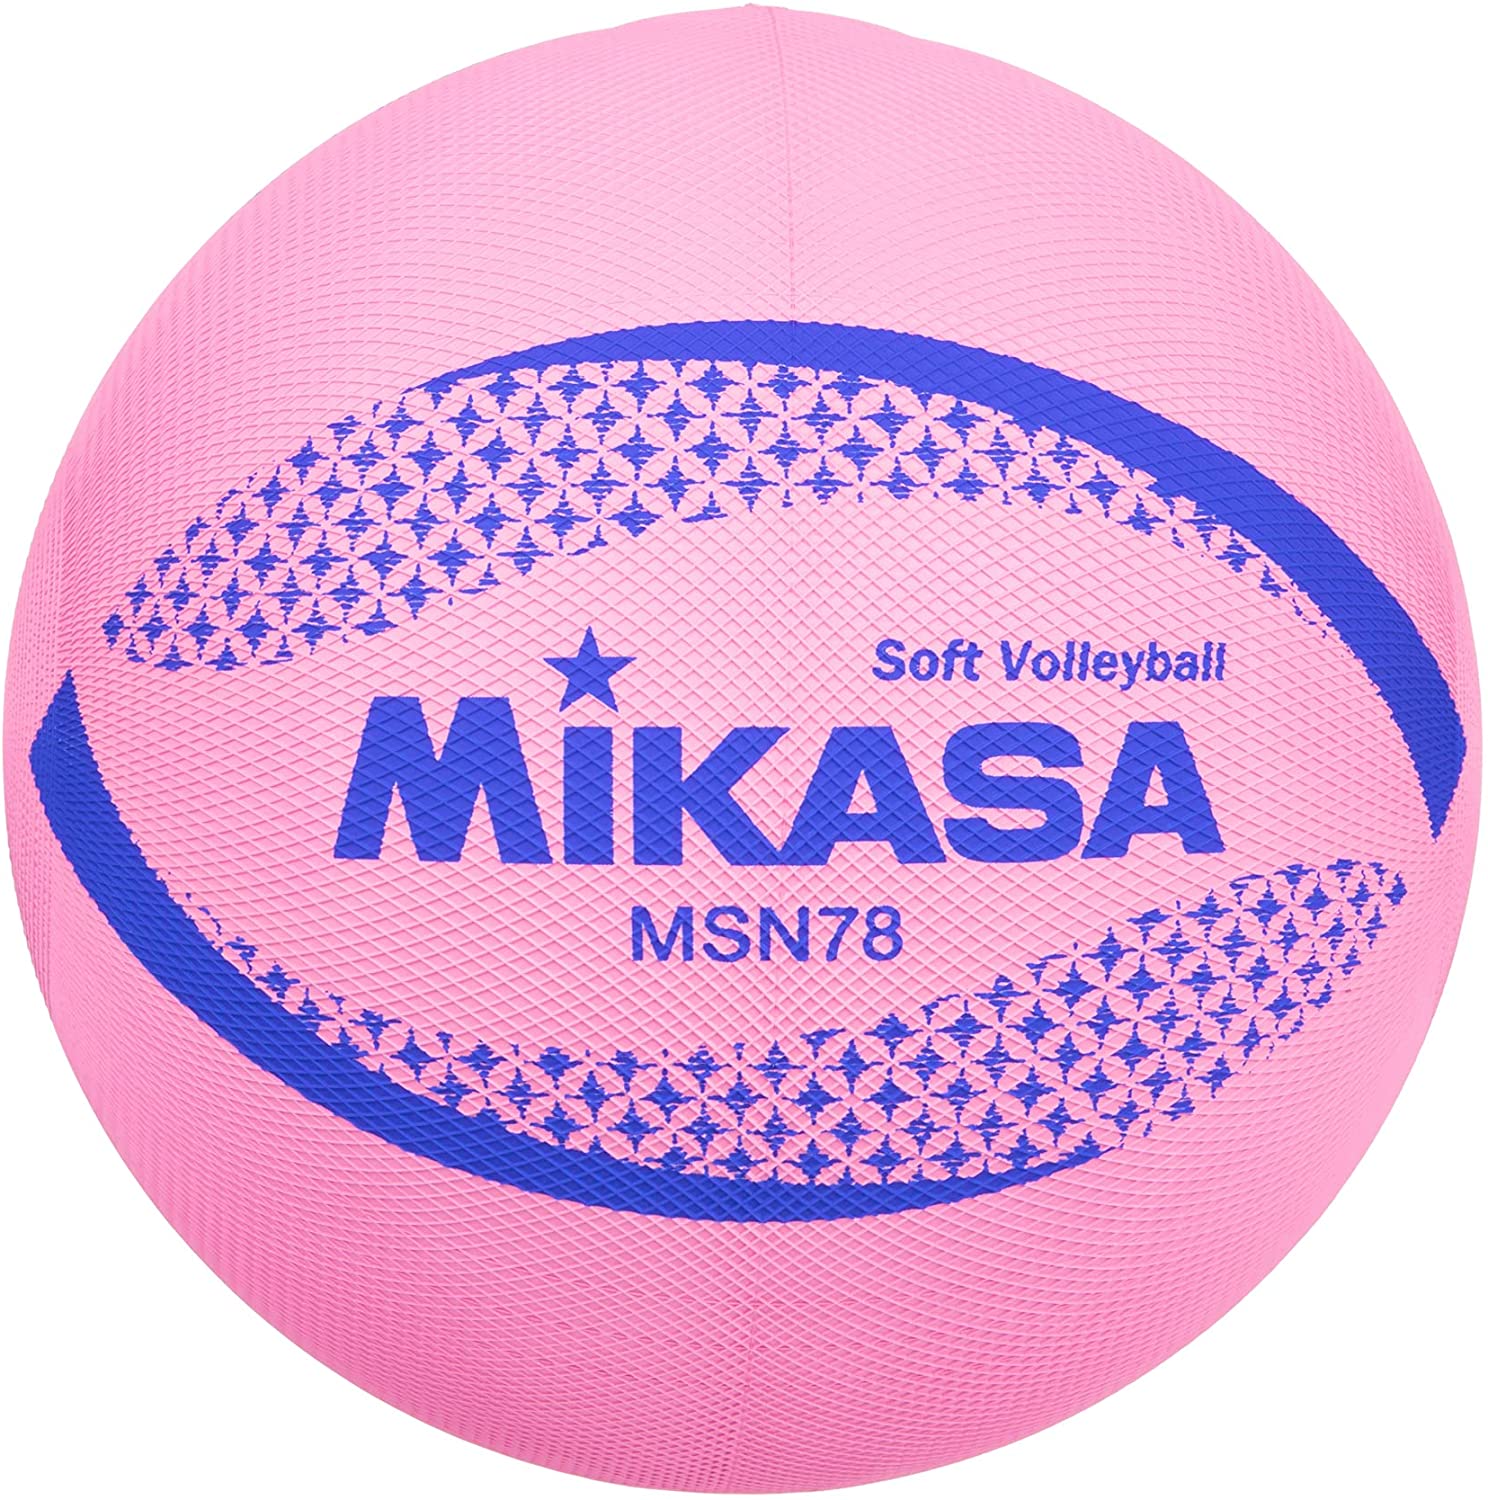 種別 バレーボール 色 ピンク 材質 特殊配合ゴム ブランド ミカサ 商品の重量 222 g こちらの商品は空気の入っていない状態でのお届けとなりますので、予めご了承ください。空気の入れ過ぎにご注意ください。